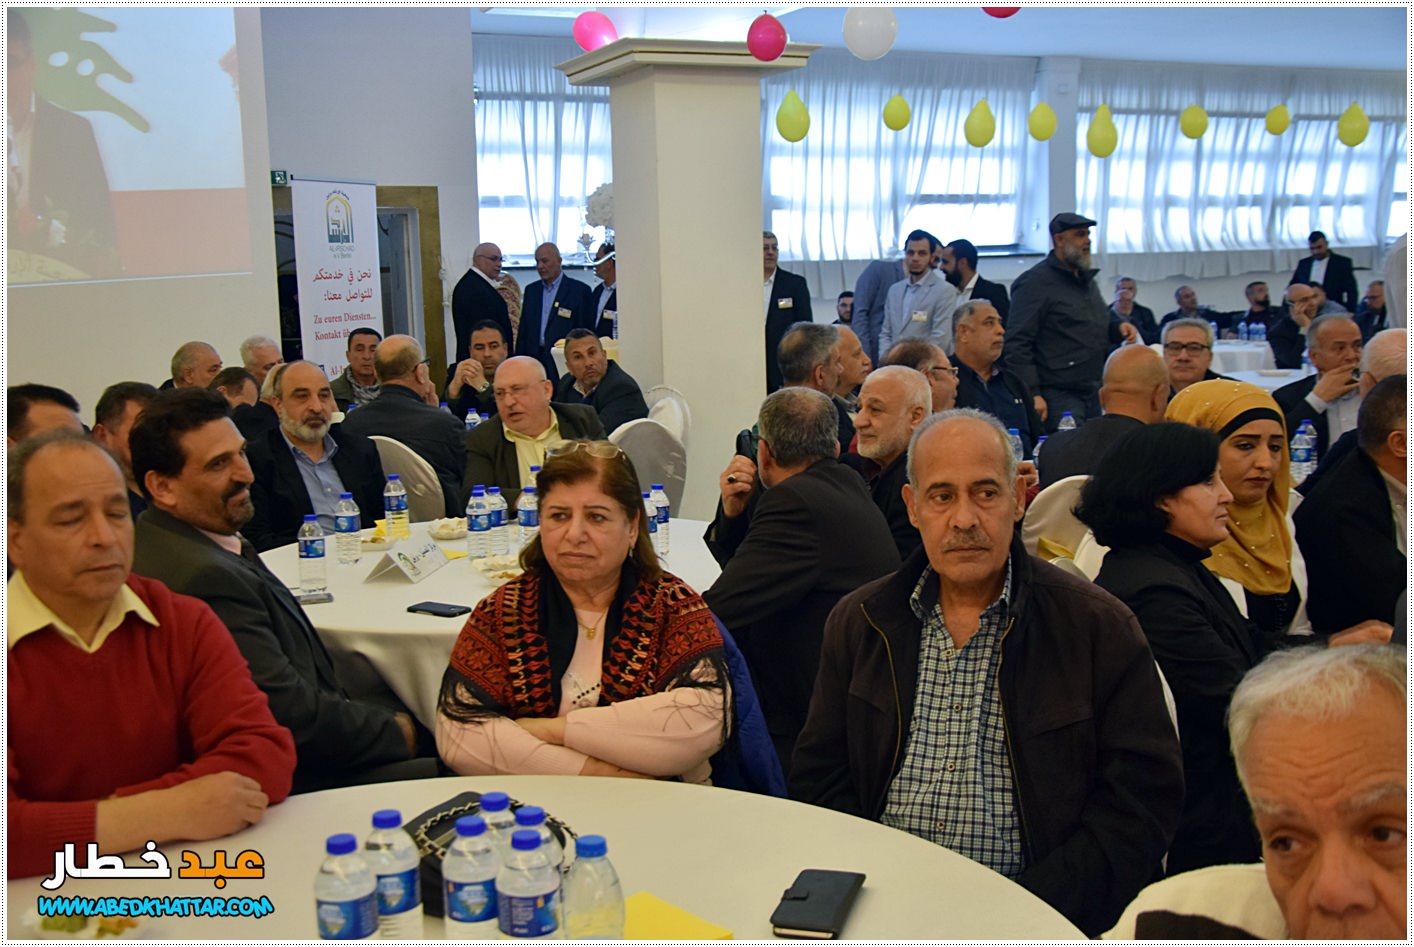 جمعية الإرشاد والجمعيات اللبنانية اقامت احتفال بمناسبة عيد النصر والتحرير